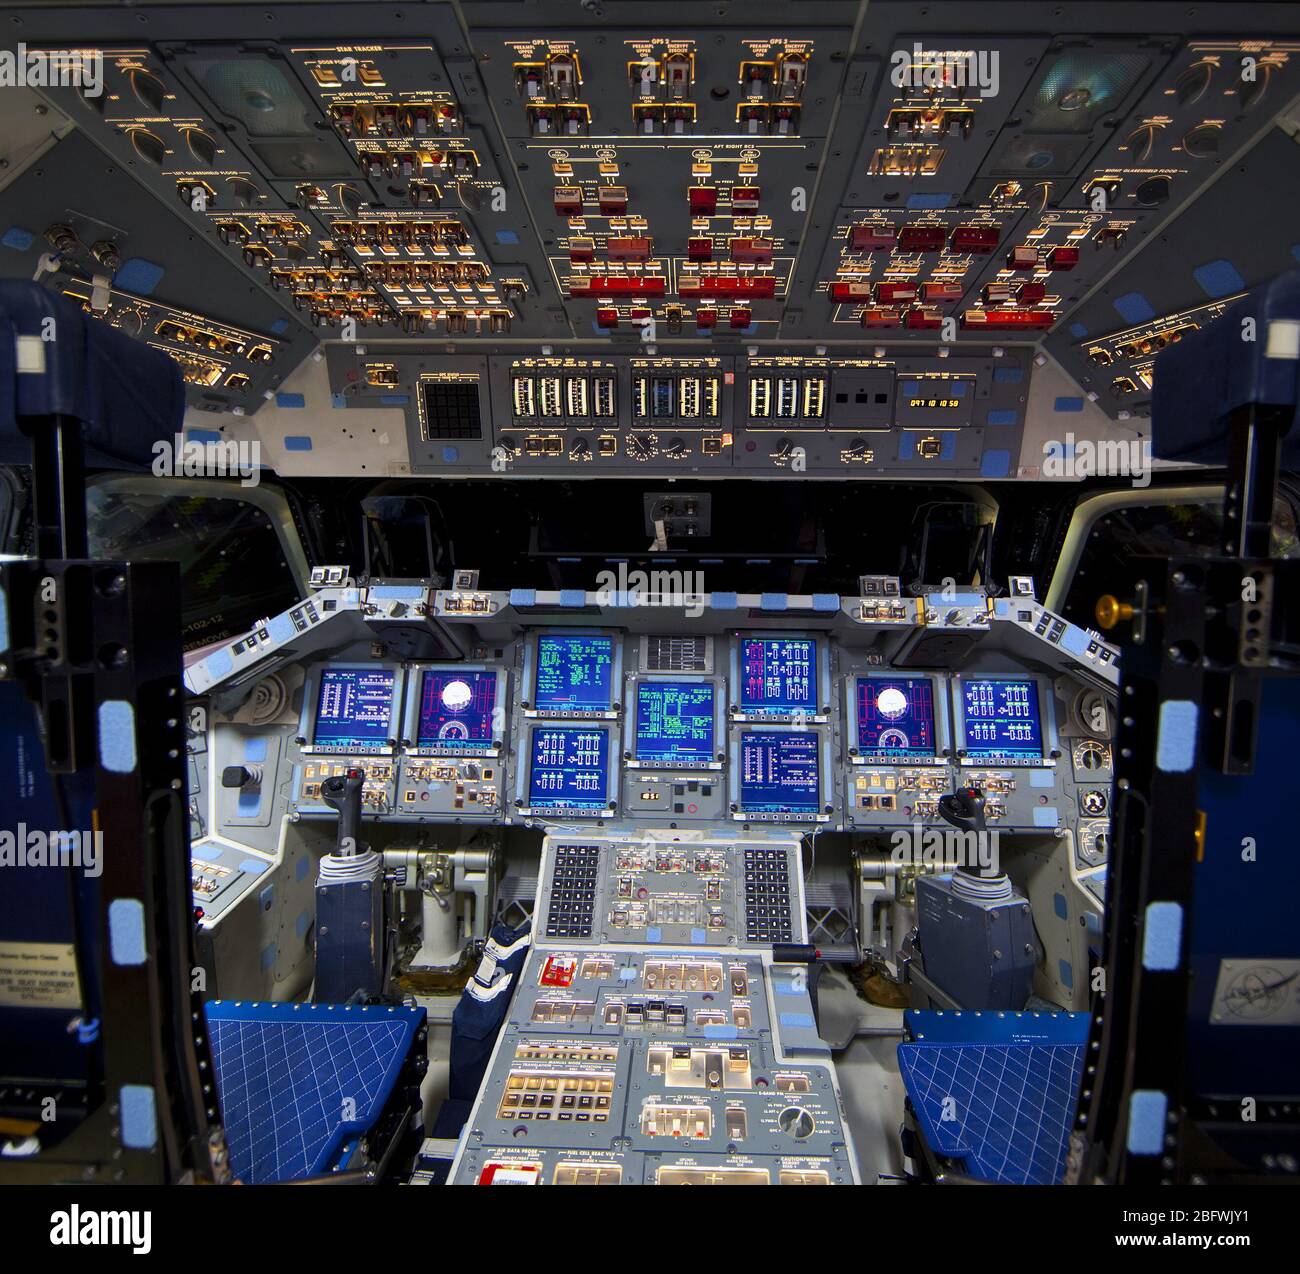 Cap Canaveral, Floride - à l'orbiter processing facility-2 de la NASA au Centre spatial Kennedy en Floride, le poste de pilotage de la navette spatiale Endeavour s'allume pendant le programme de la navette spatiale à la retraite et de transition d'activités. Entreprise est en cours de préparation pour l'affichage public au California Science Center à Los Angeles. Au cours de ses 19 années de carrière, Endeavour a passé 299 jours dans l'espace au cours de 25 missions. Banque D'Images